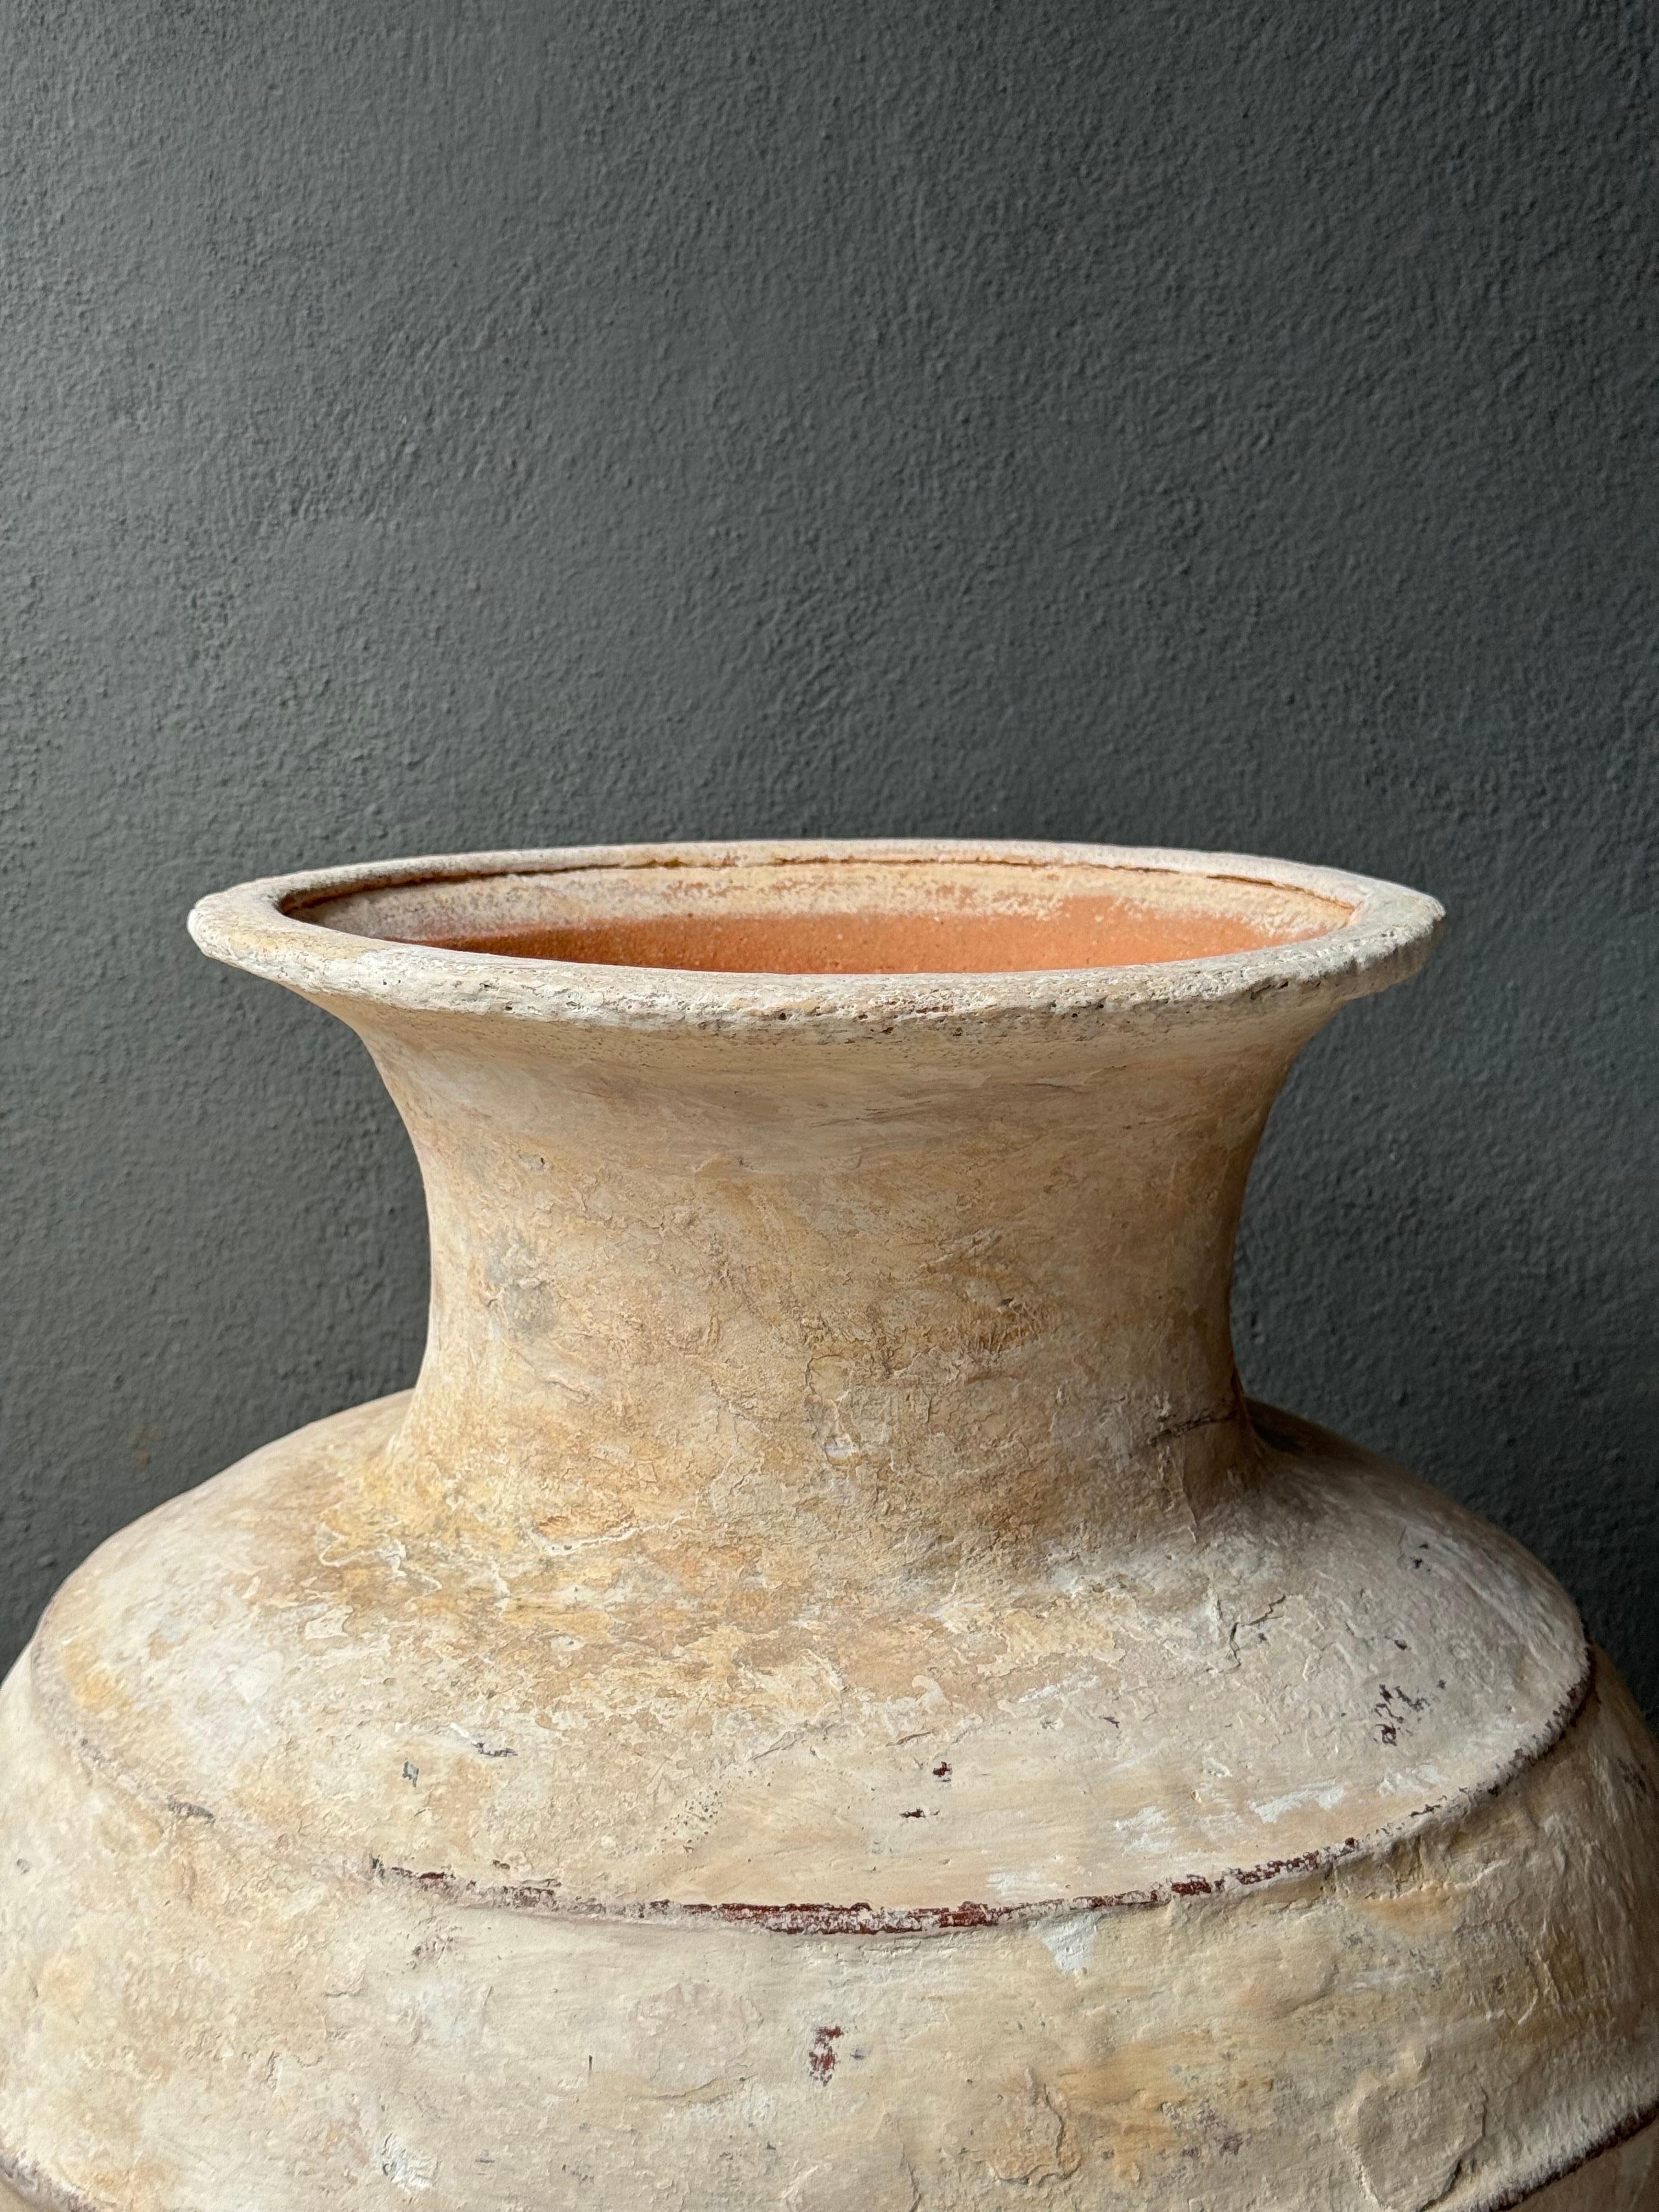 Keramisches Wassergefäß aus Zentral-Yucatan, Mexiko, Anfang des 20. Jahrhunderts. Die Maya-Gemeinschaften verwendeten im Allgemeinen weißen Gips auf ihren Terrakotta-Gefäßen, um das Wasser auf einer kühleren Temperatur zu halten. Diese Technik half